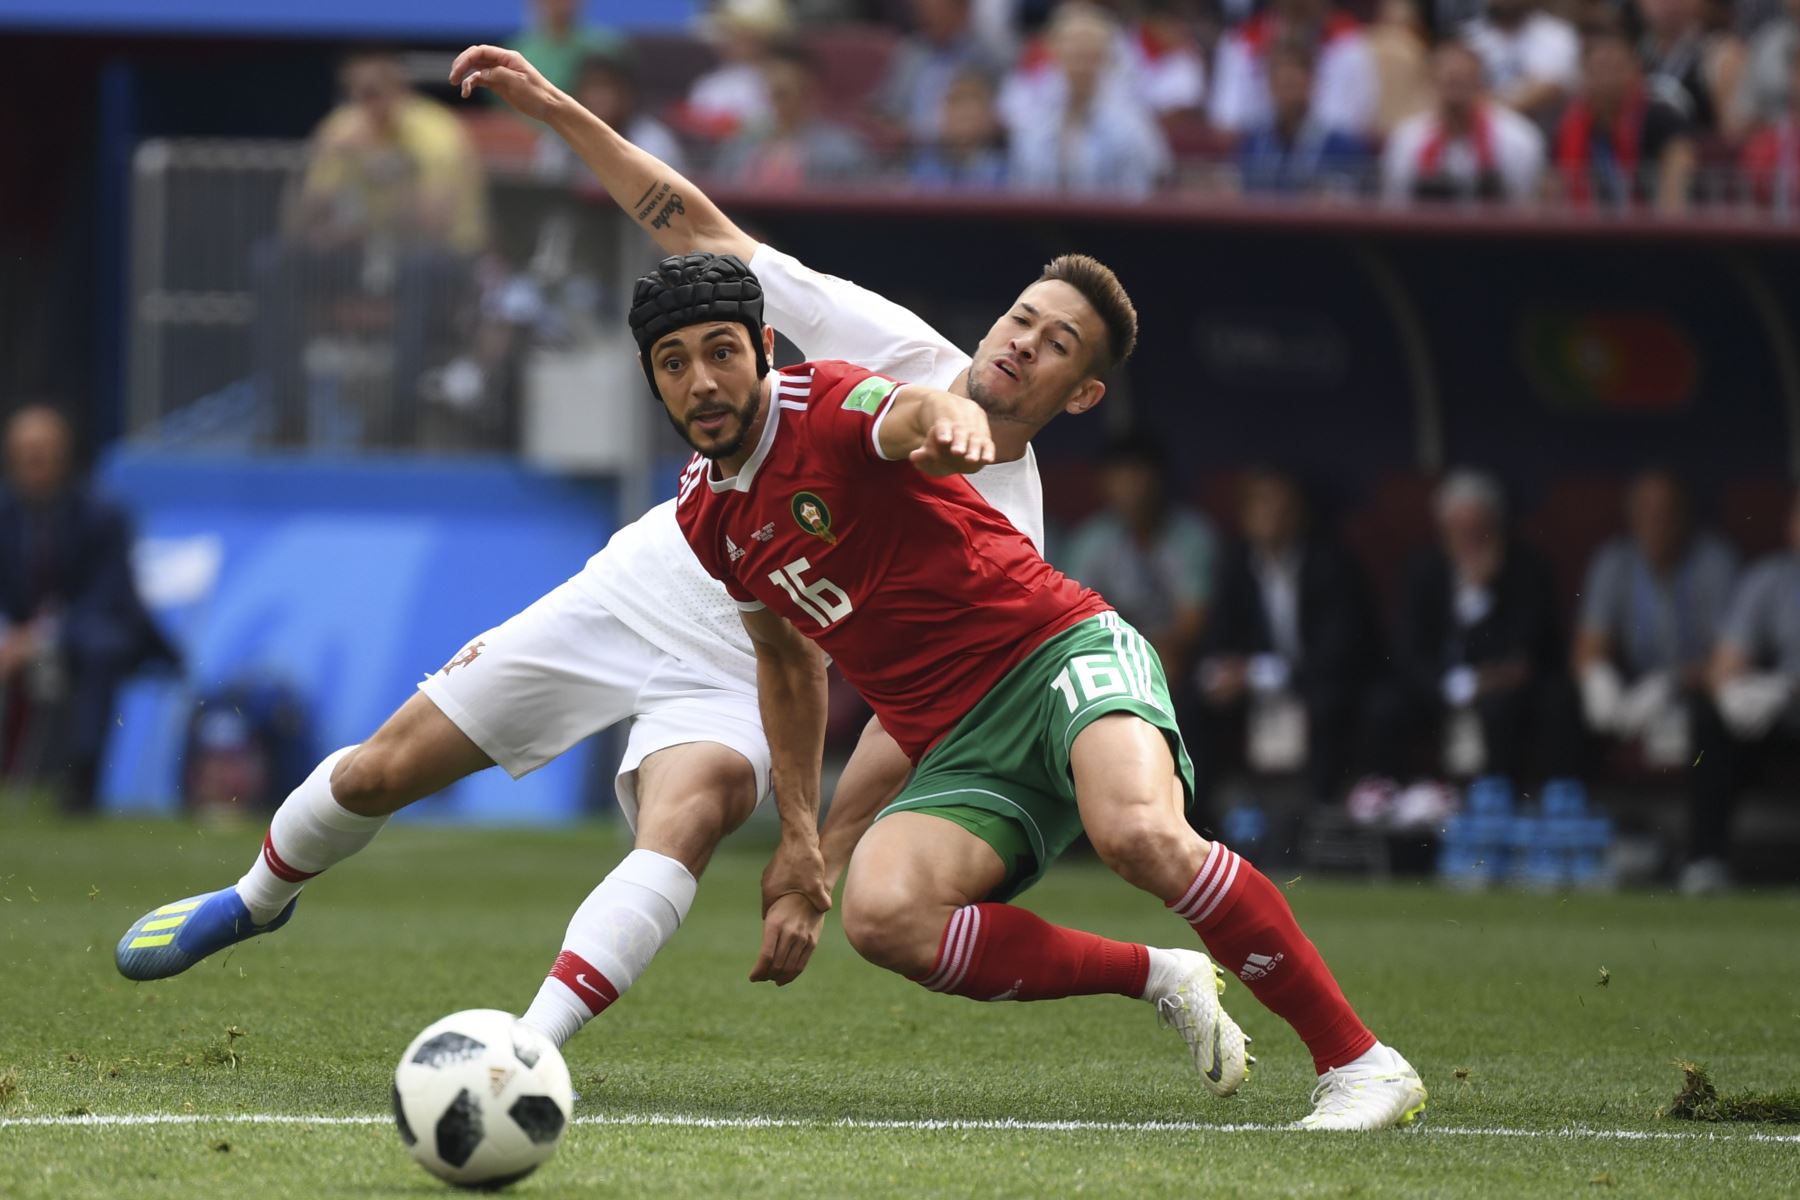 El delantero marroquí Noureddine Amrabat (delantero C) y el defensor portugués Raphael Guerreiro (trasero C) observan el balón durante el partido de fútbol del Grupo B de la Copa Mundial Rusia 2018 entre Portugal y Marruecos en el Estadio Luzhniki de Moscú el 20 de junio de 2018. / AFP